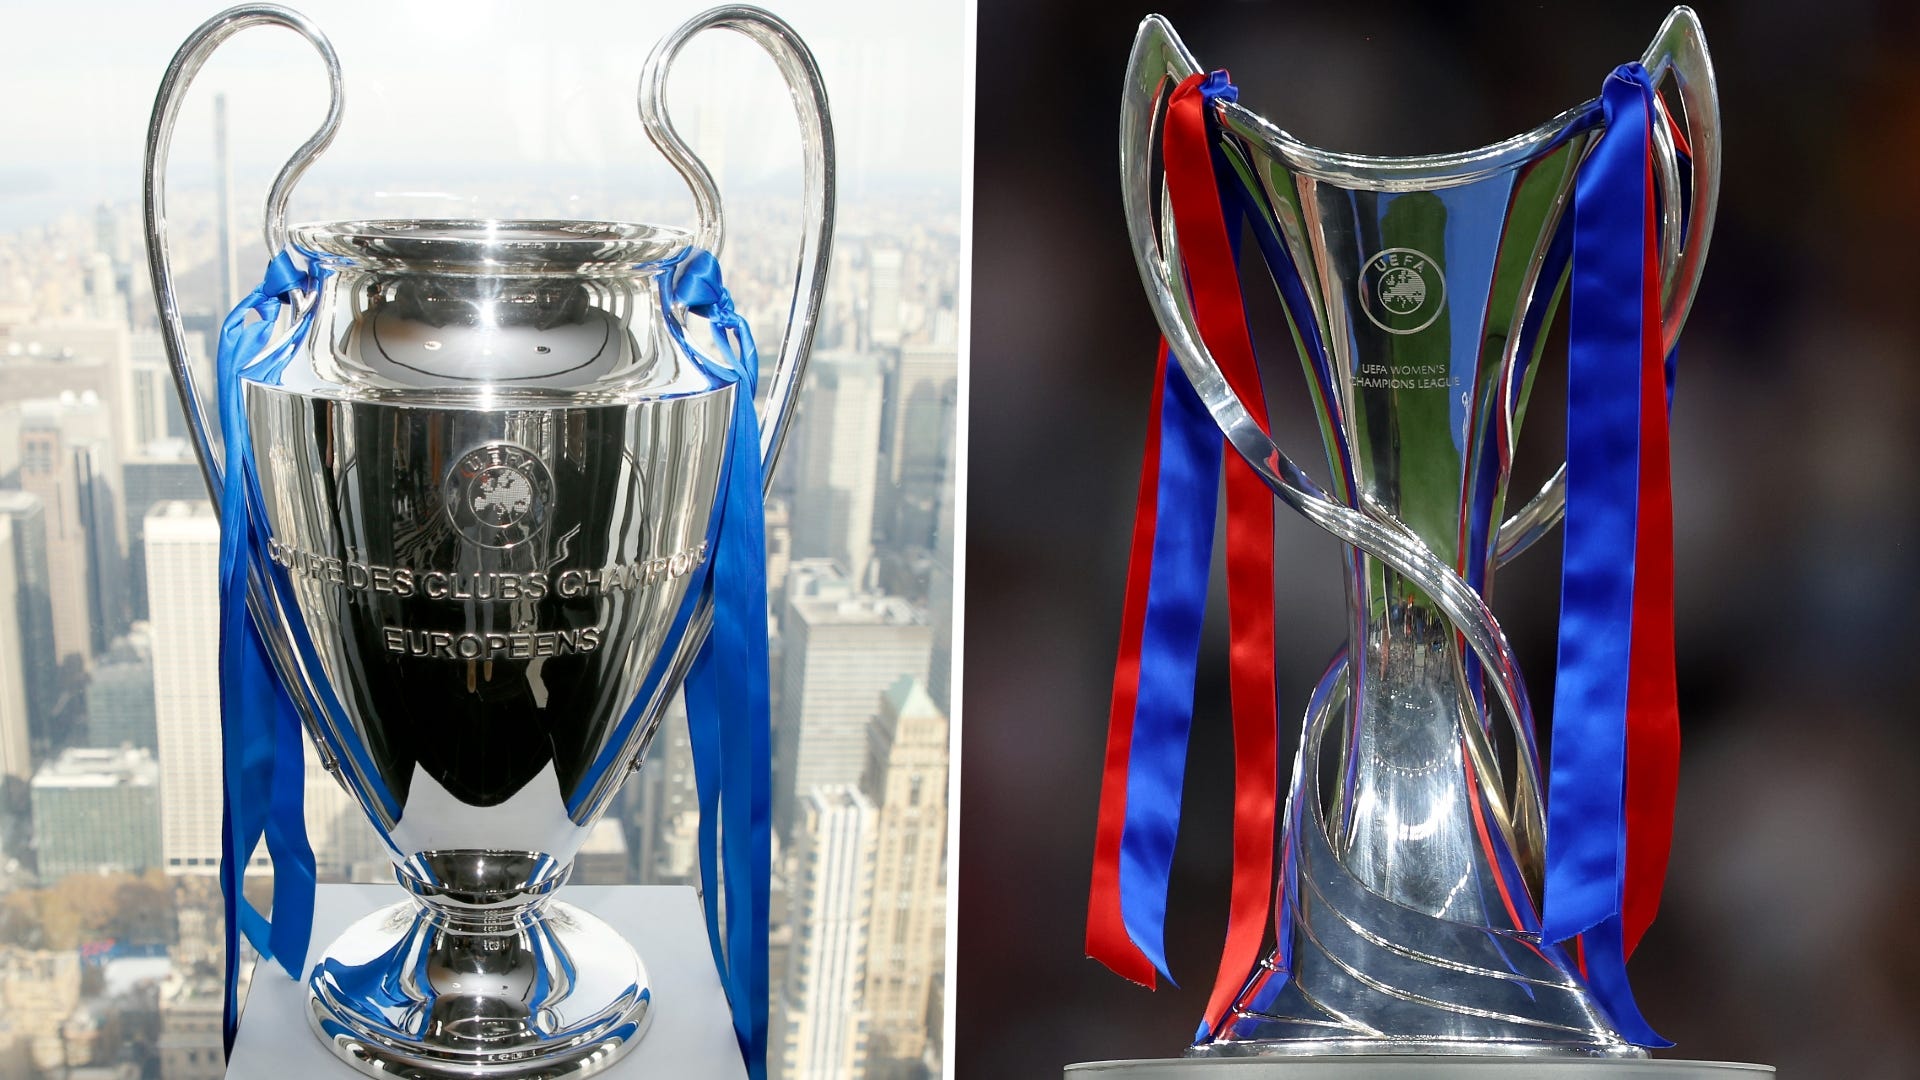 El trofeo de la Champions League estará en Bogotá